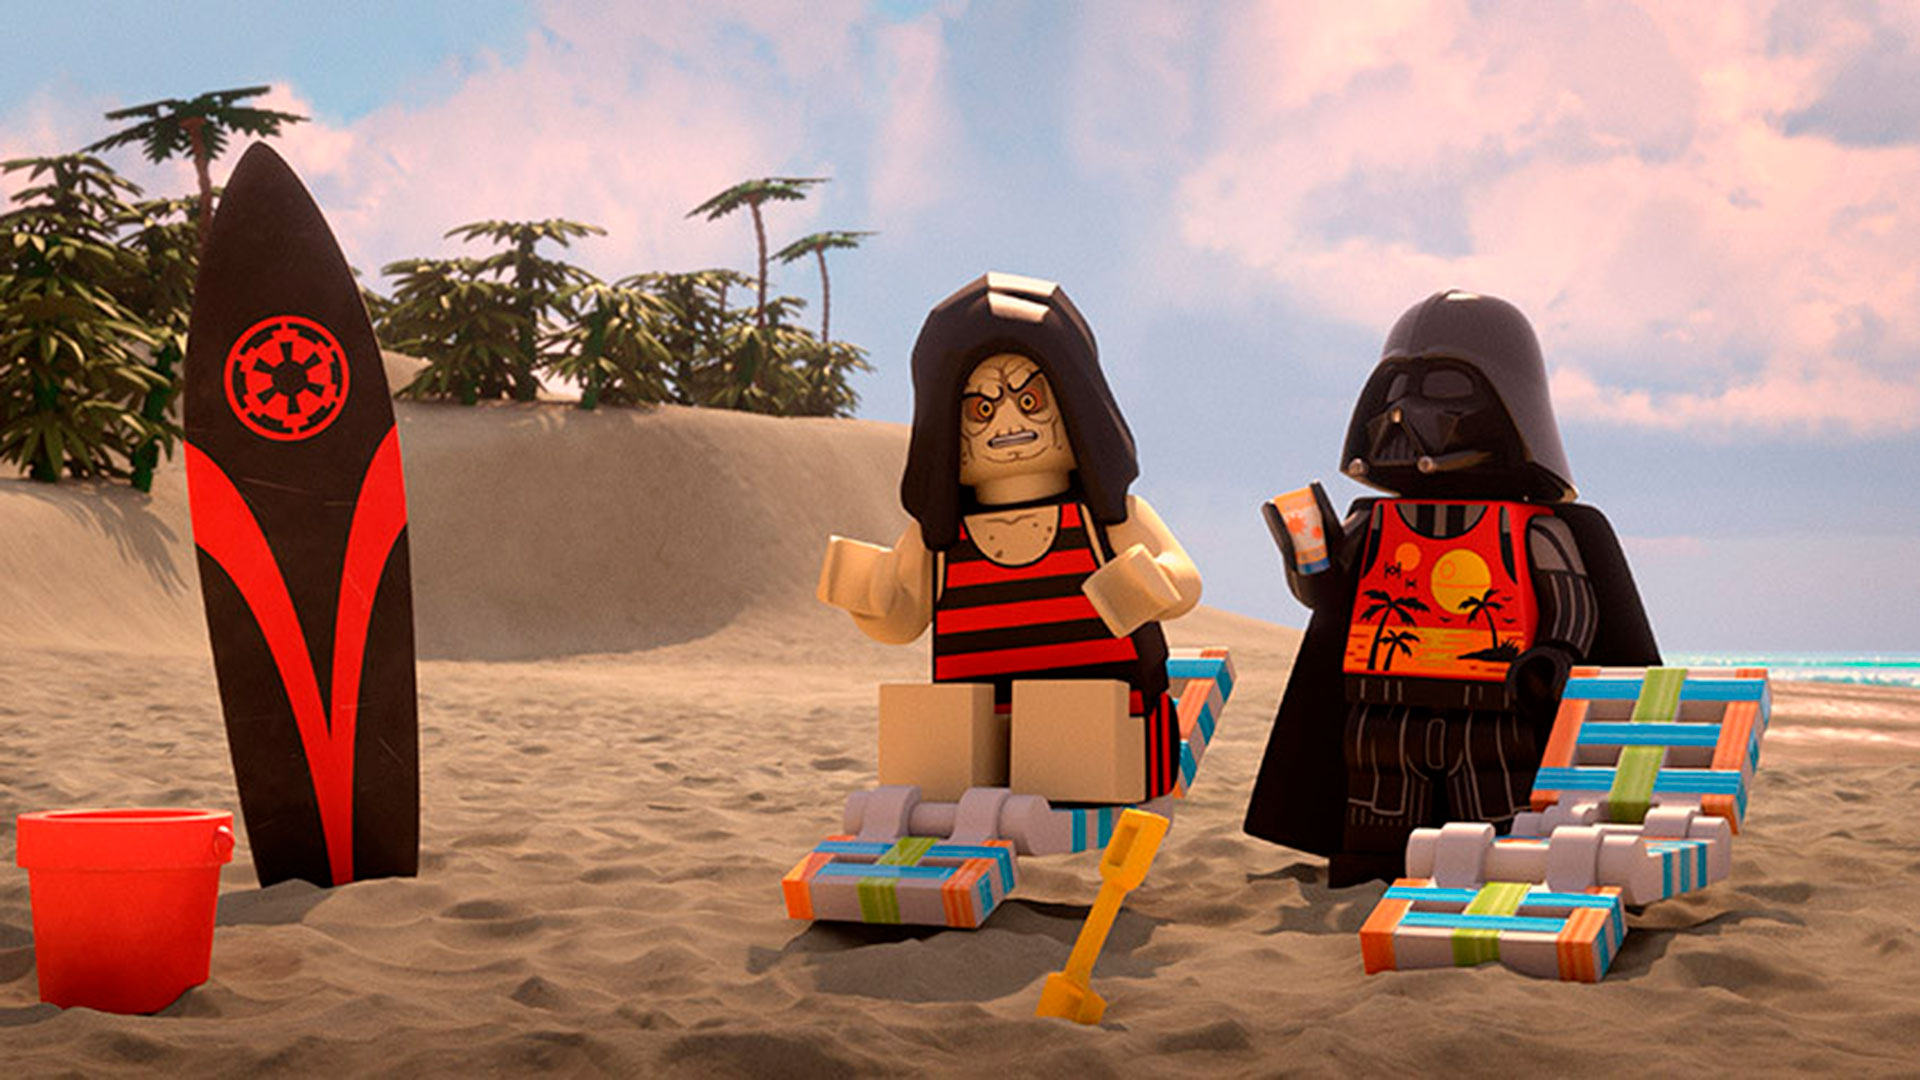 "Lego Star Wars: vacaciones de verano" llega el 5 de agosto a la plataforma. (Disney Plus)